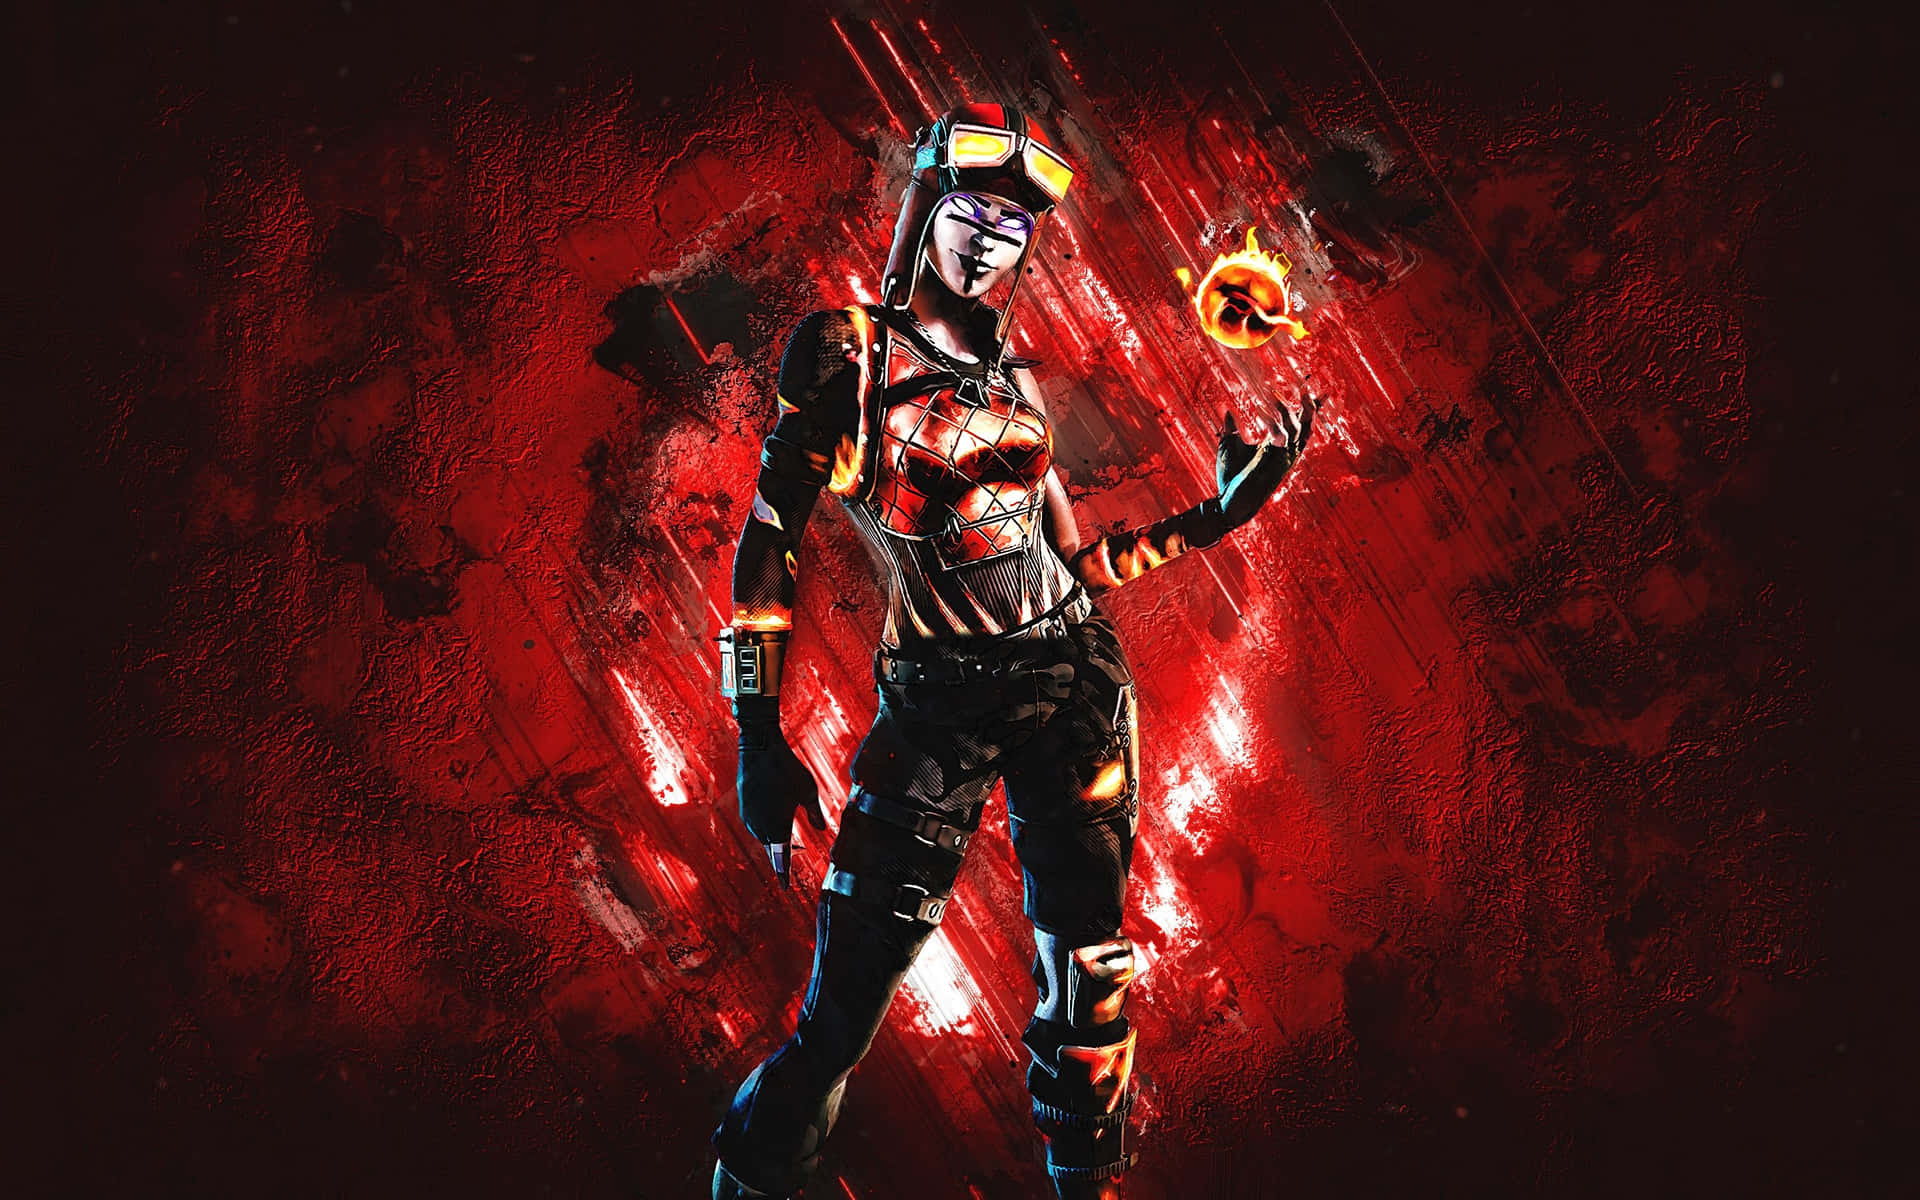 "Blaze reigns supreme in Fortnite" Wallpaper